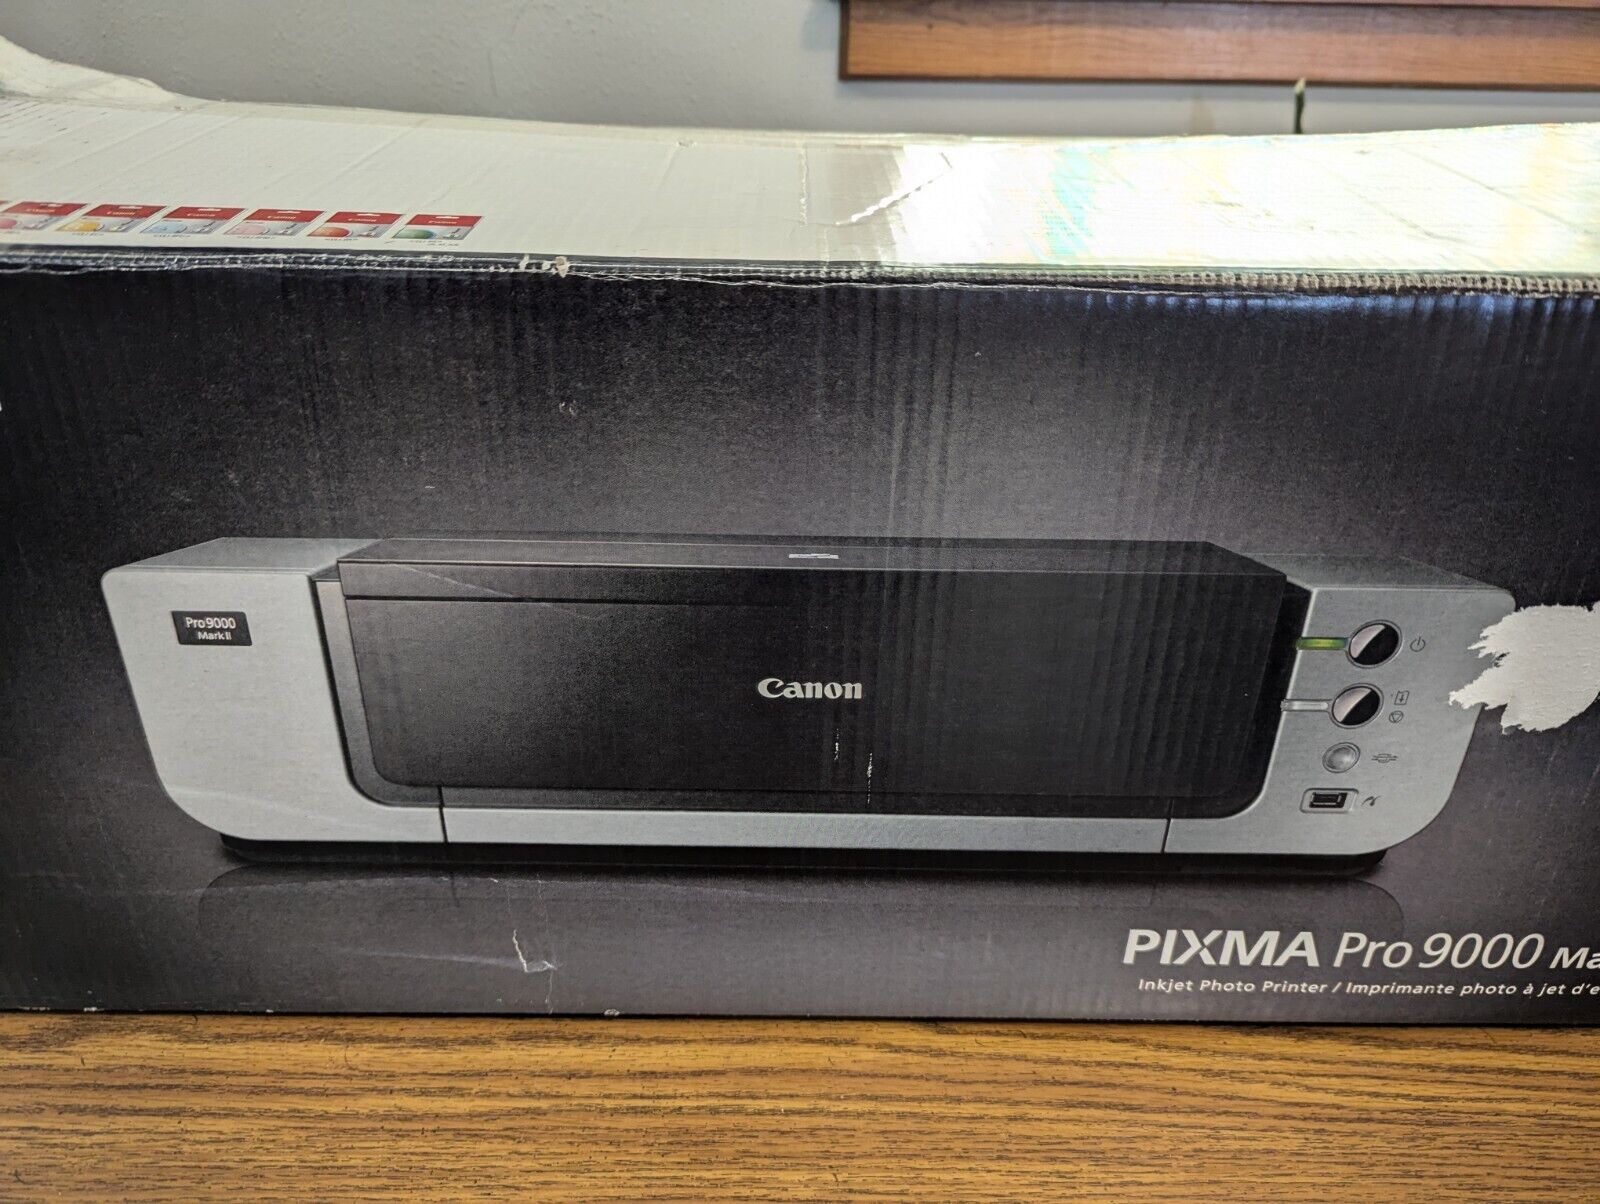 Canon PIXMA Pro9000 MARK II Professional Inkjet Photo Printer New In Box No Book